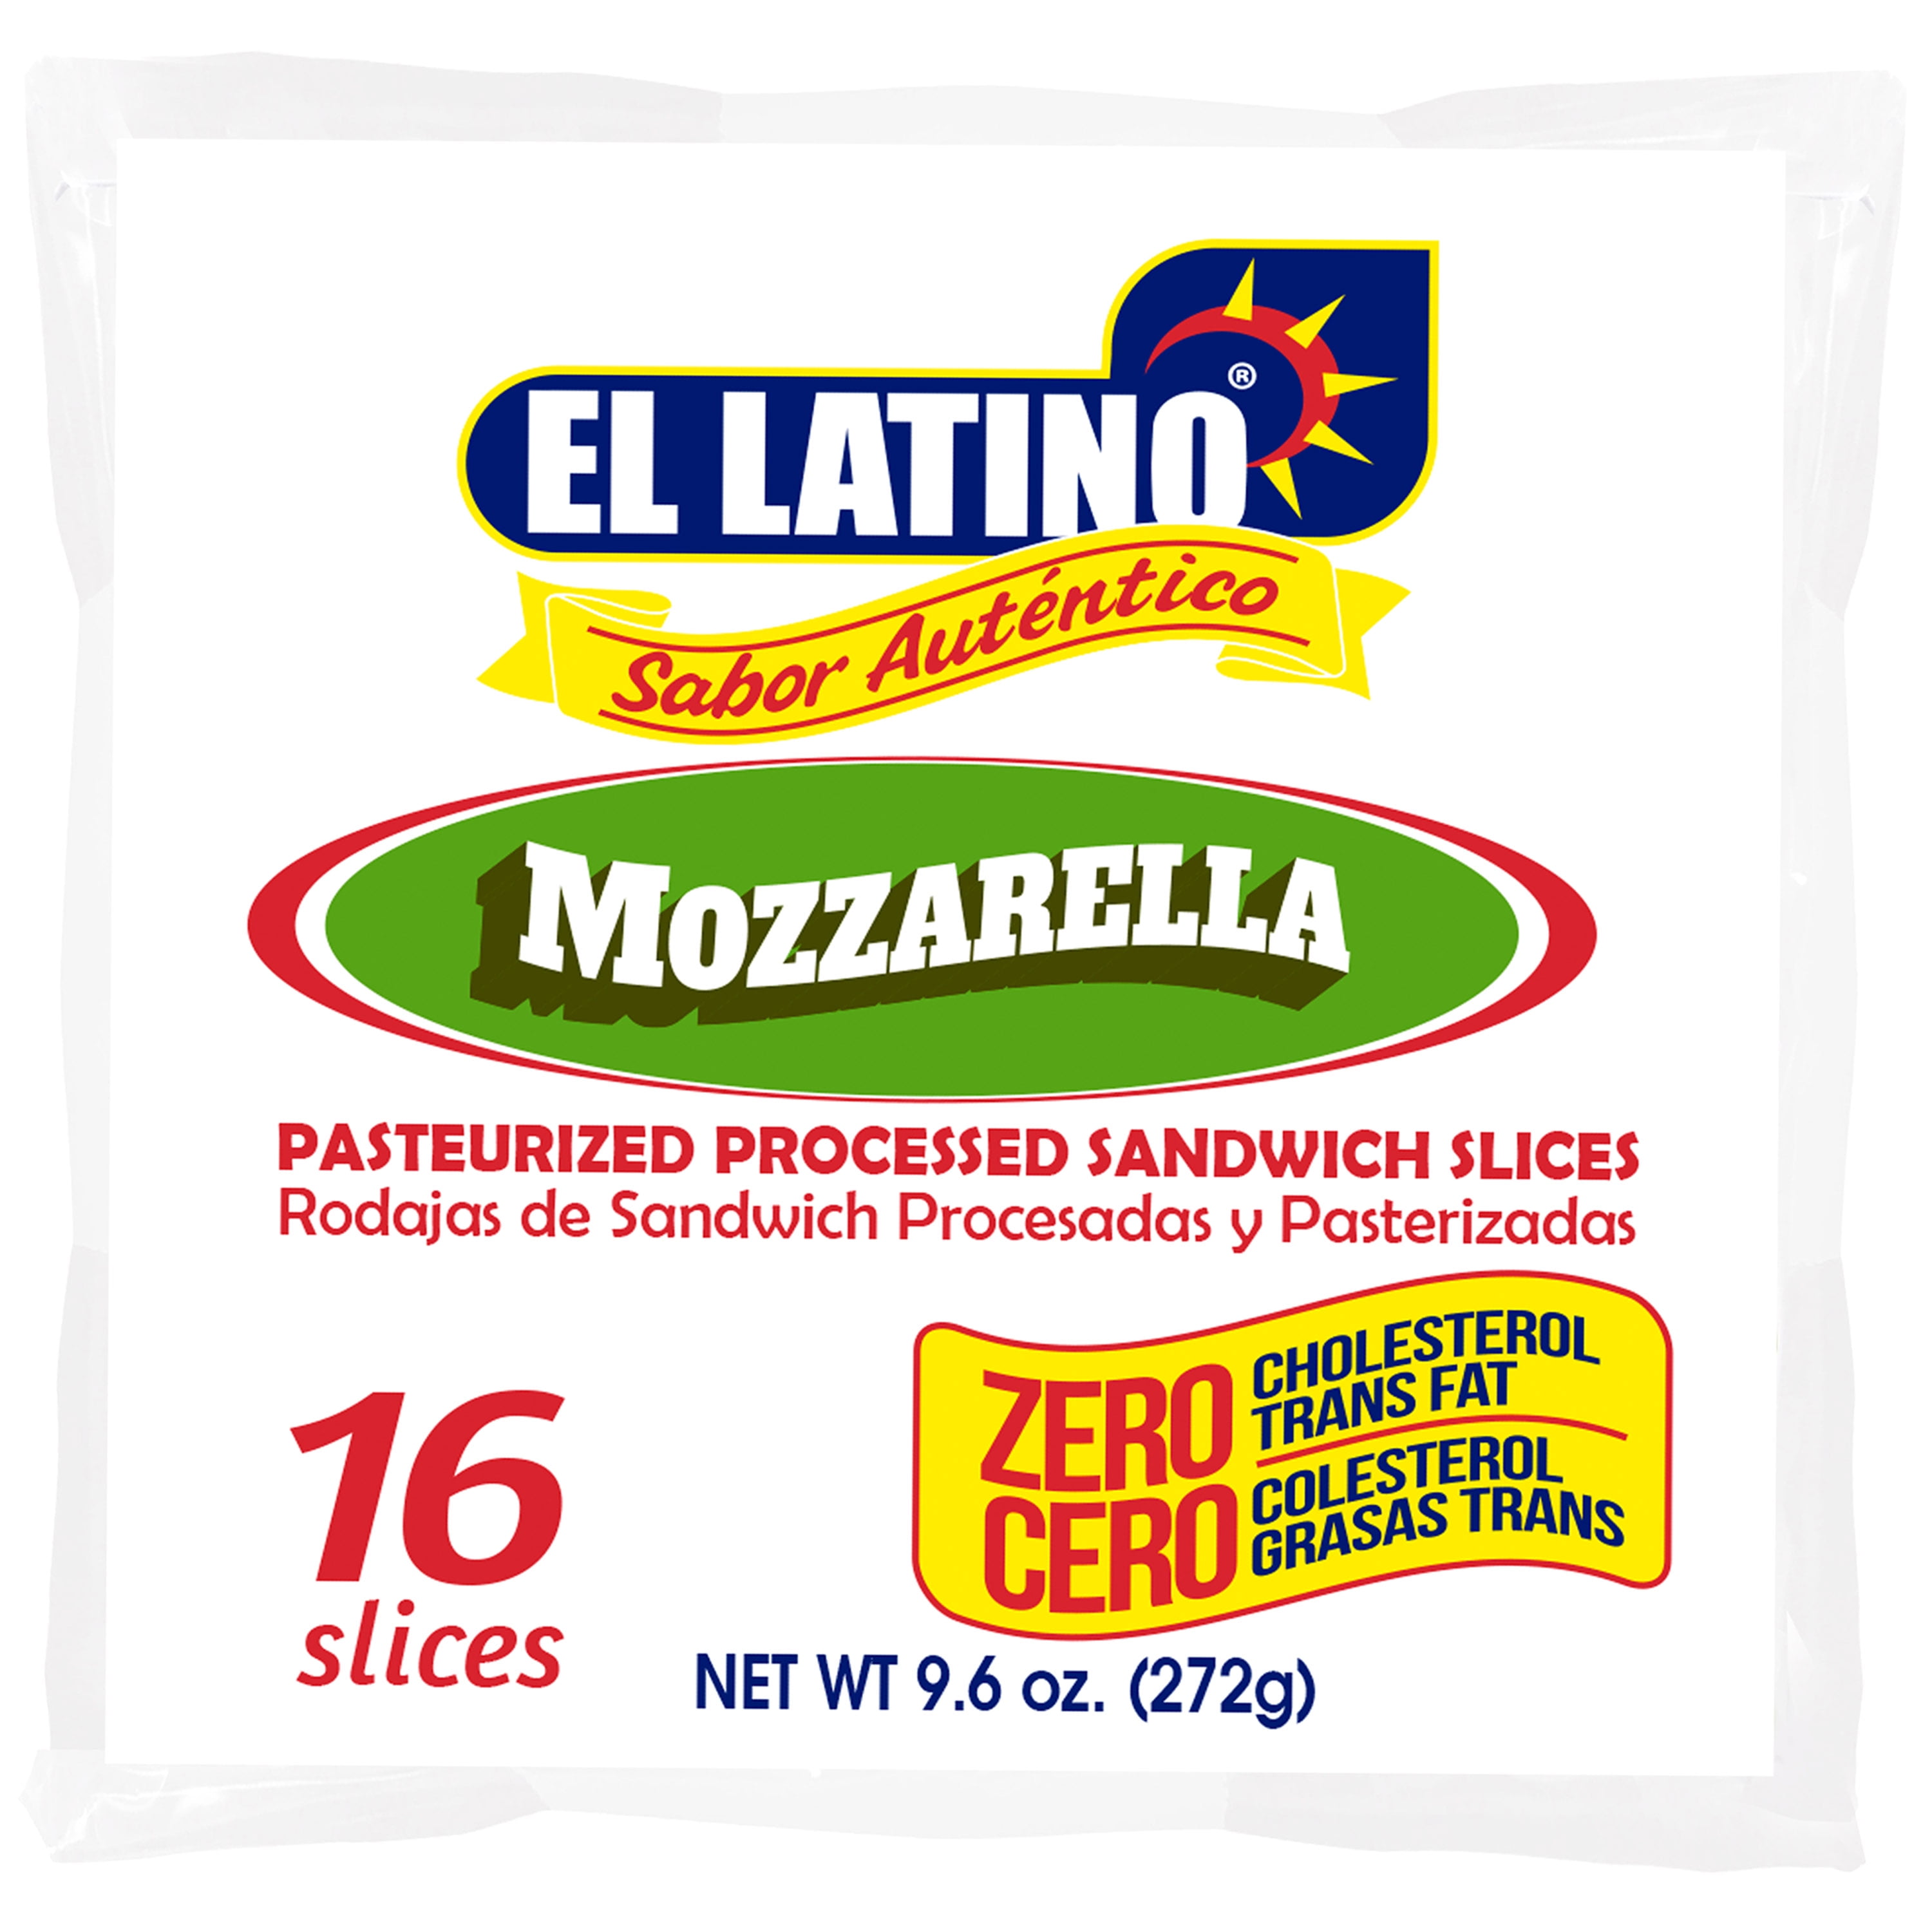 https://i5.walmartimages.com/seo/El-Latino-Mozzarella-Sandwich-Slices-9-6oz-Plastic-Bag-Container_76392148-a253-4a8a-a3b6-114eca97d3ab.017dd622e6ae8d124caab587cfbcfb13.jpeg